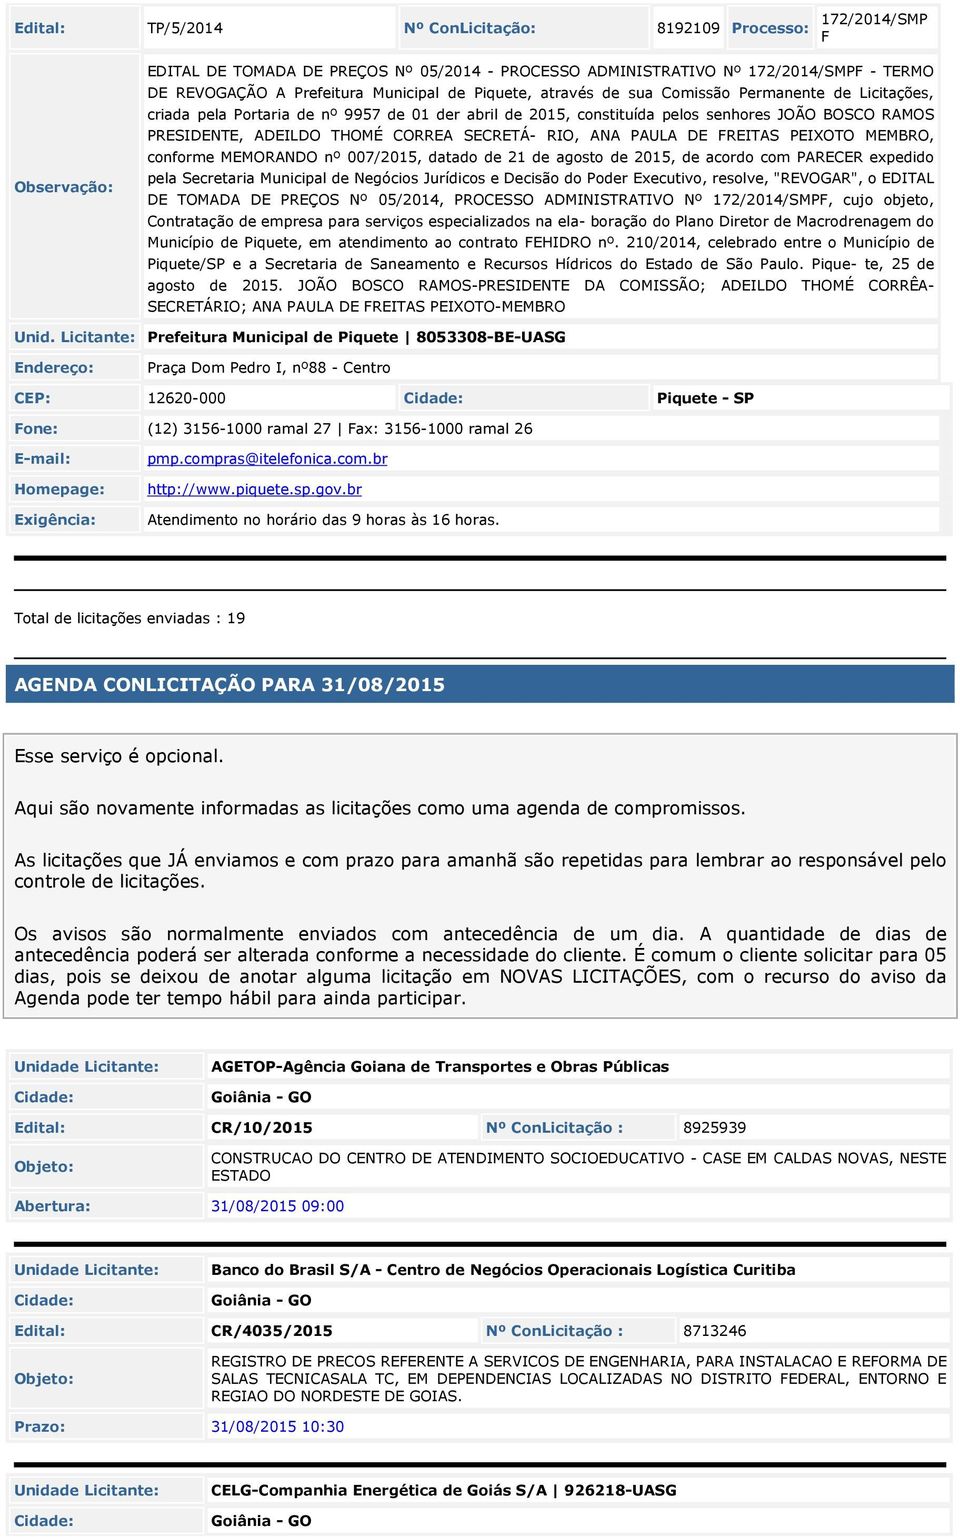 SECRETÁ- RIO, ANA PAULA DE FREITAS PEIXOTO MEMBRO, conforme MEMORANDO nº 007/2015, datado de 21 de agosto de 2015, de acordo com PARECER expedido pela Secretaria Municipal de Negócios Jurídicos e